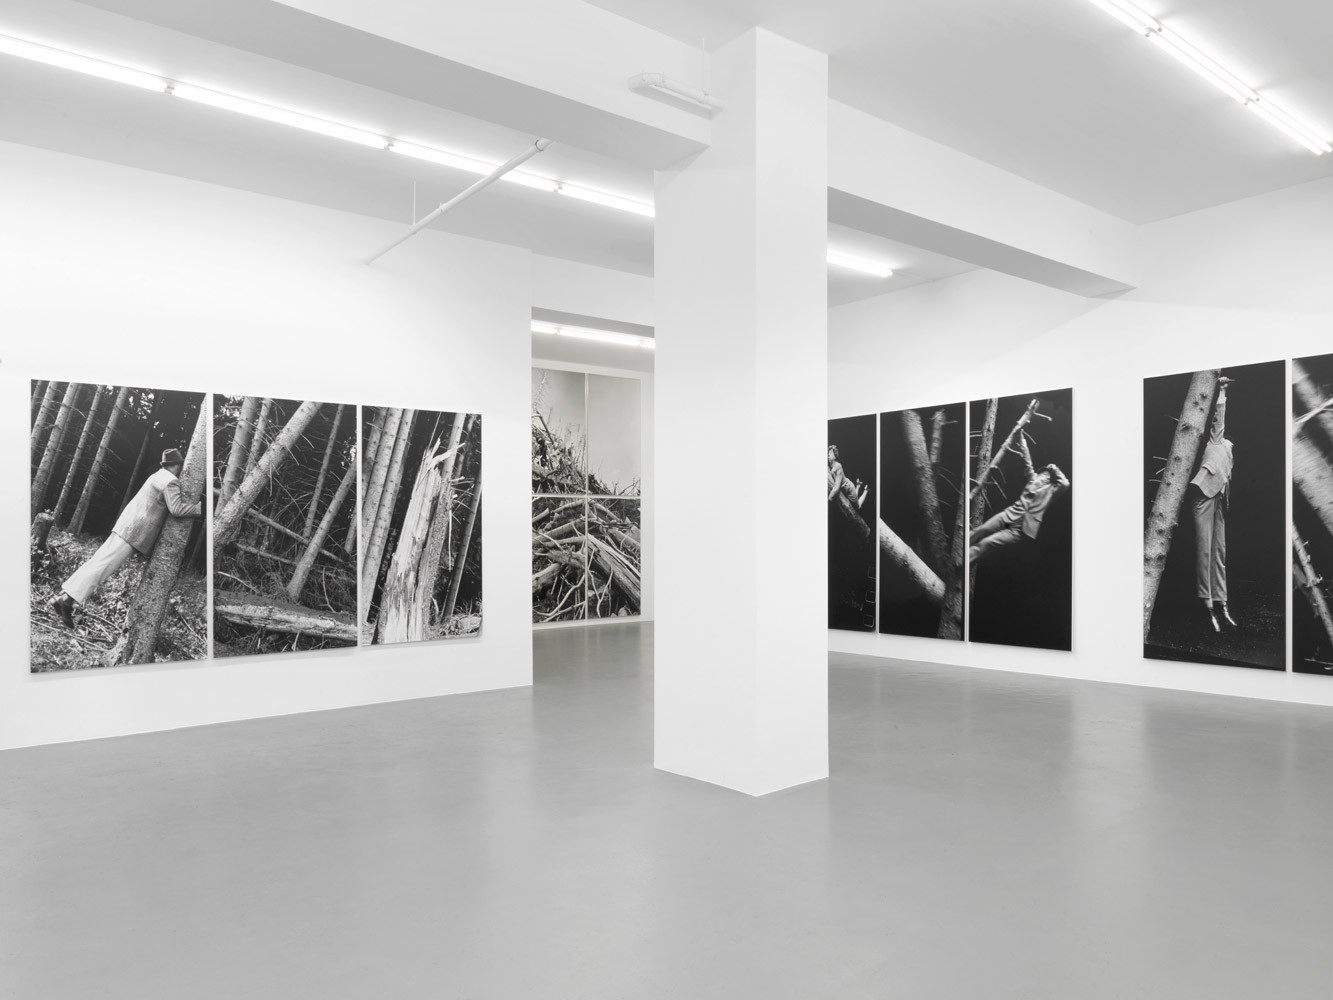 Anna & Bernhard Blume, ‘Im Wald’, Installationsansicht, 2014